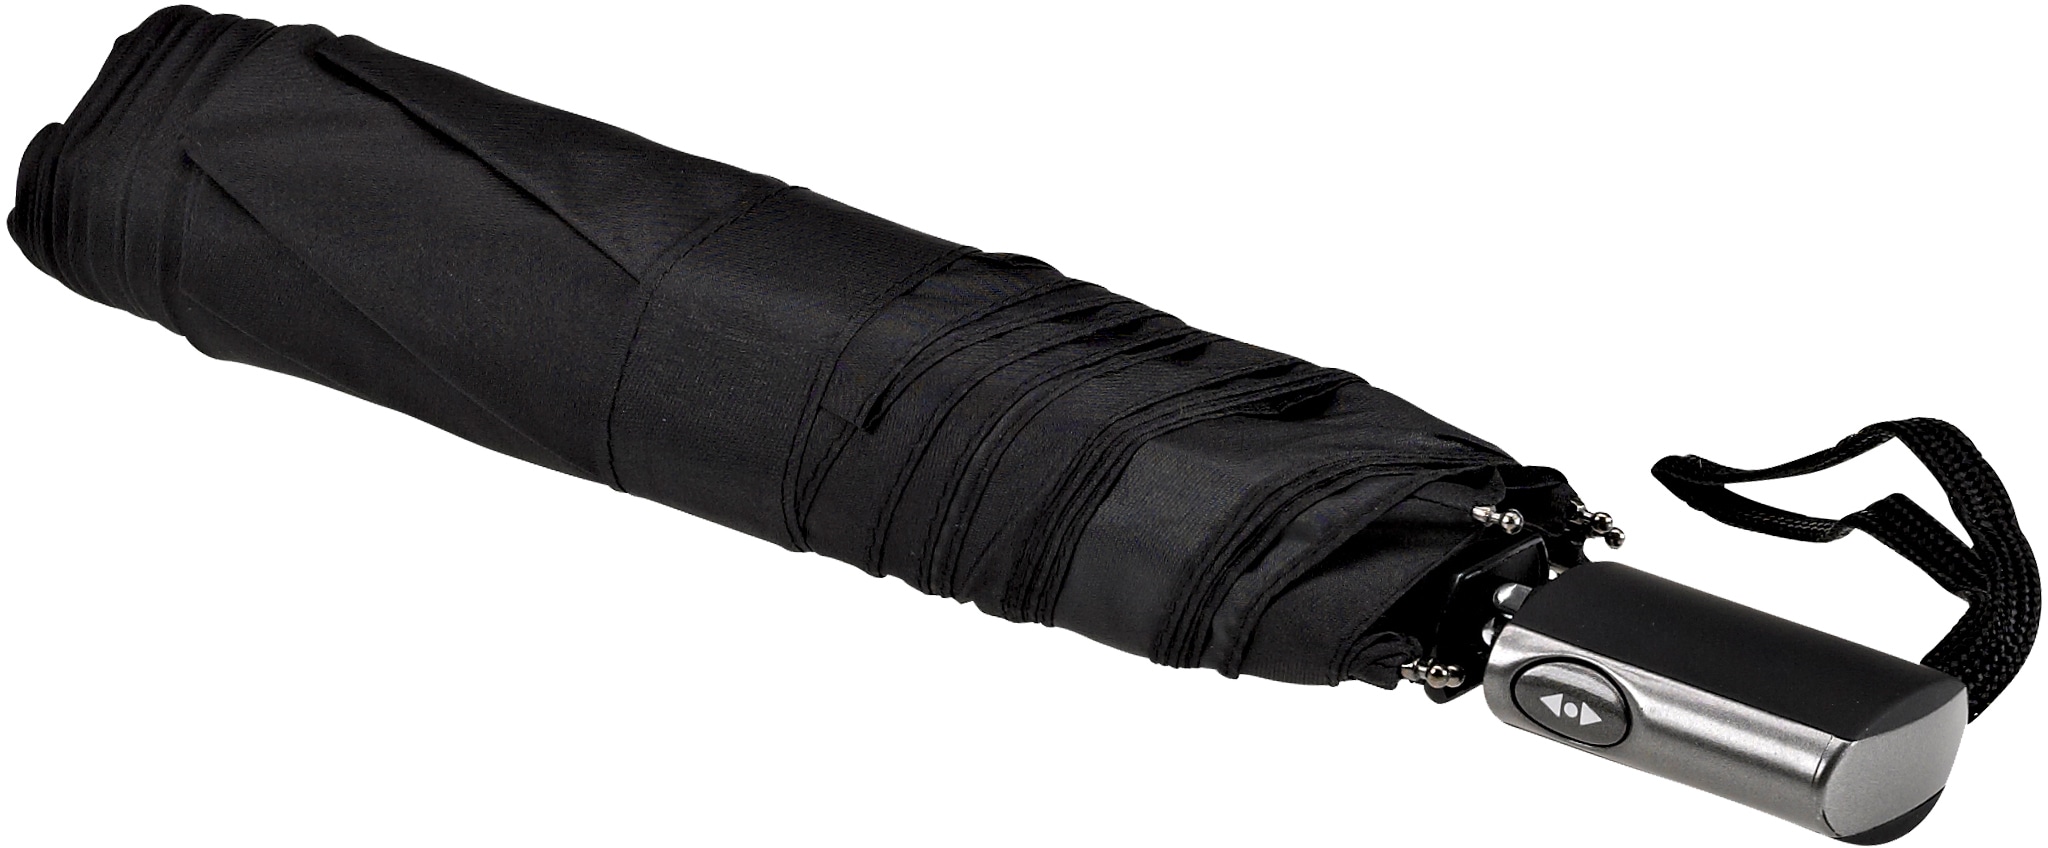 Taschenregenschirm »Automatik 3224, schwarz«, besonders leicht, extra flach, mit...